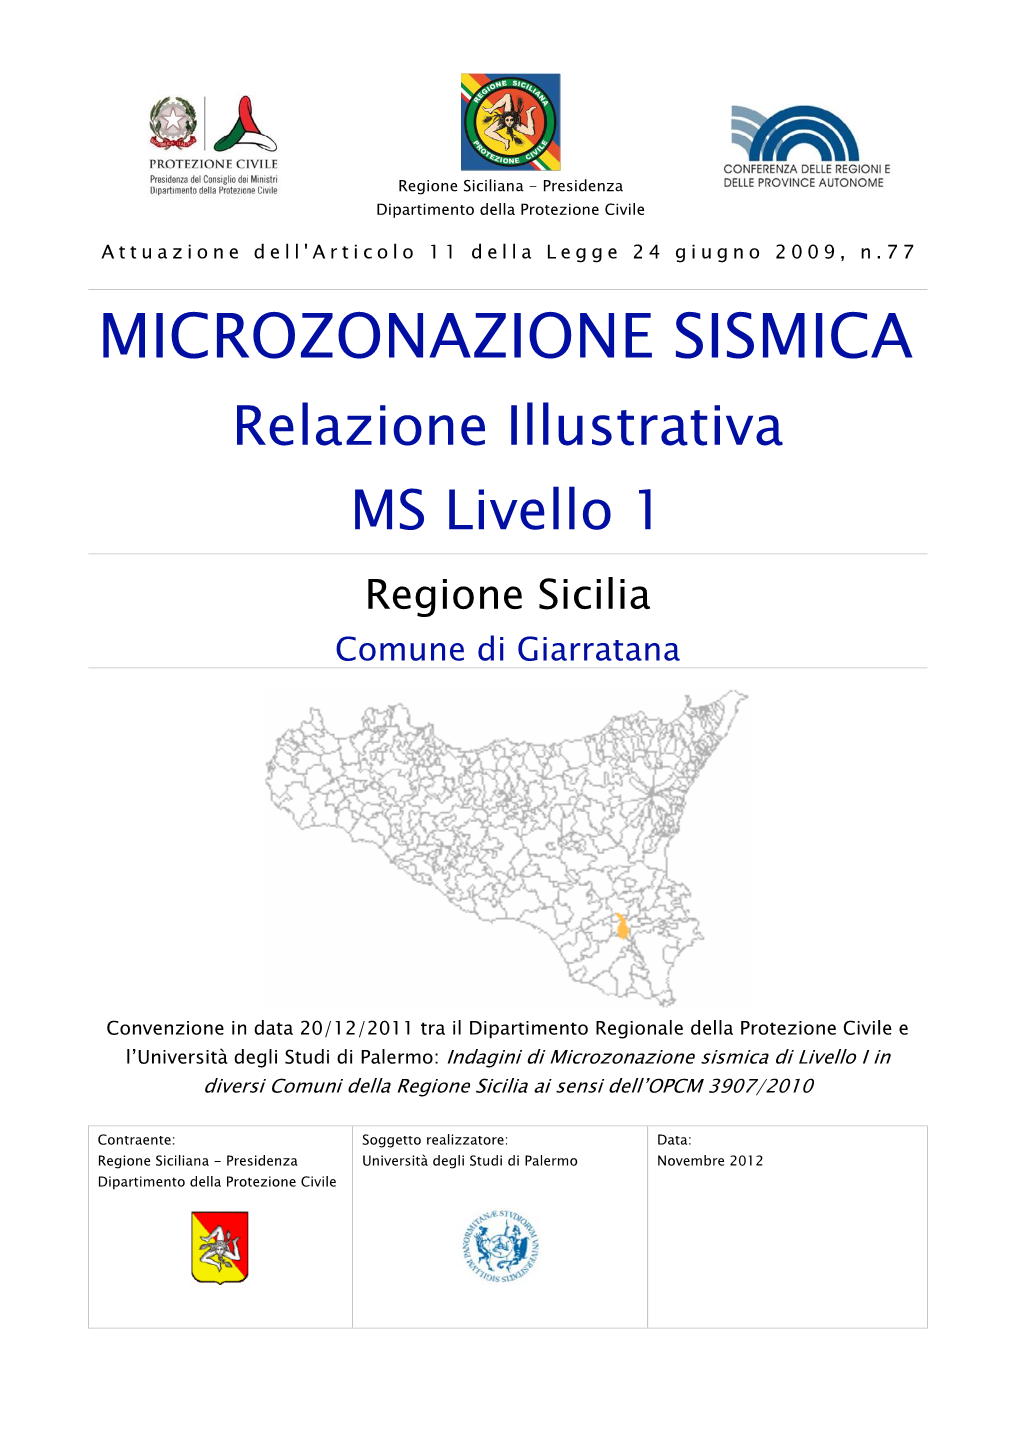 MICROZONAZIONE SISMICA Relazione Illustrativa MS Livello 1 Regione Sicilia Comune Di Giarratana